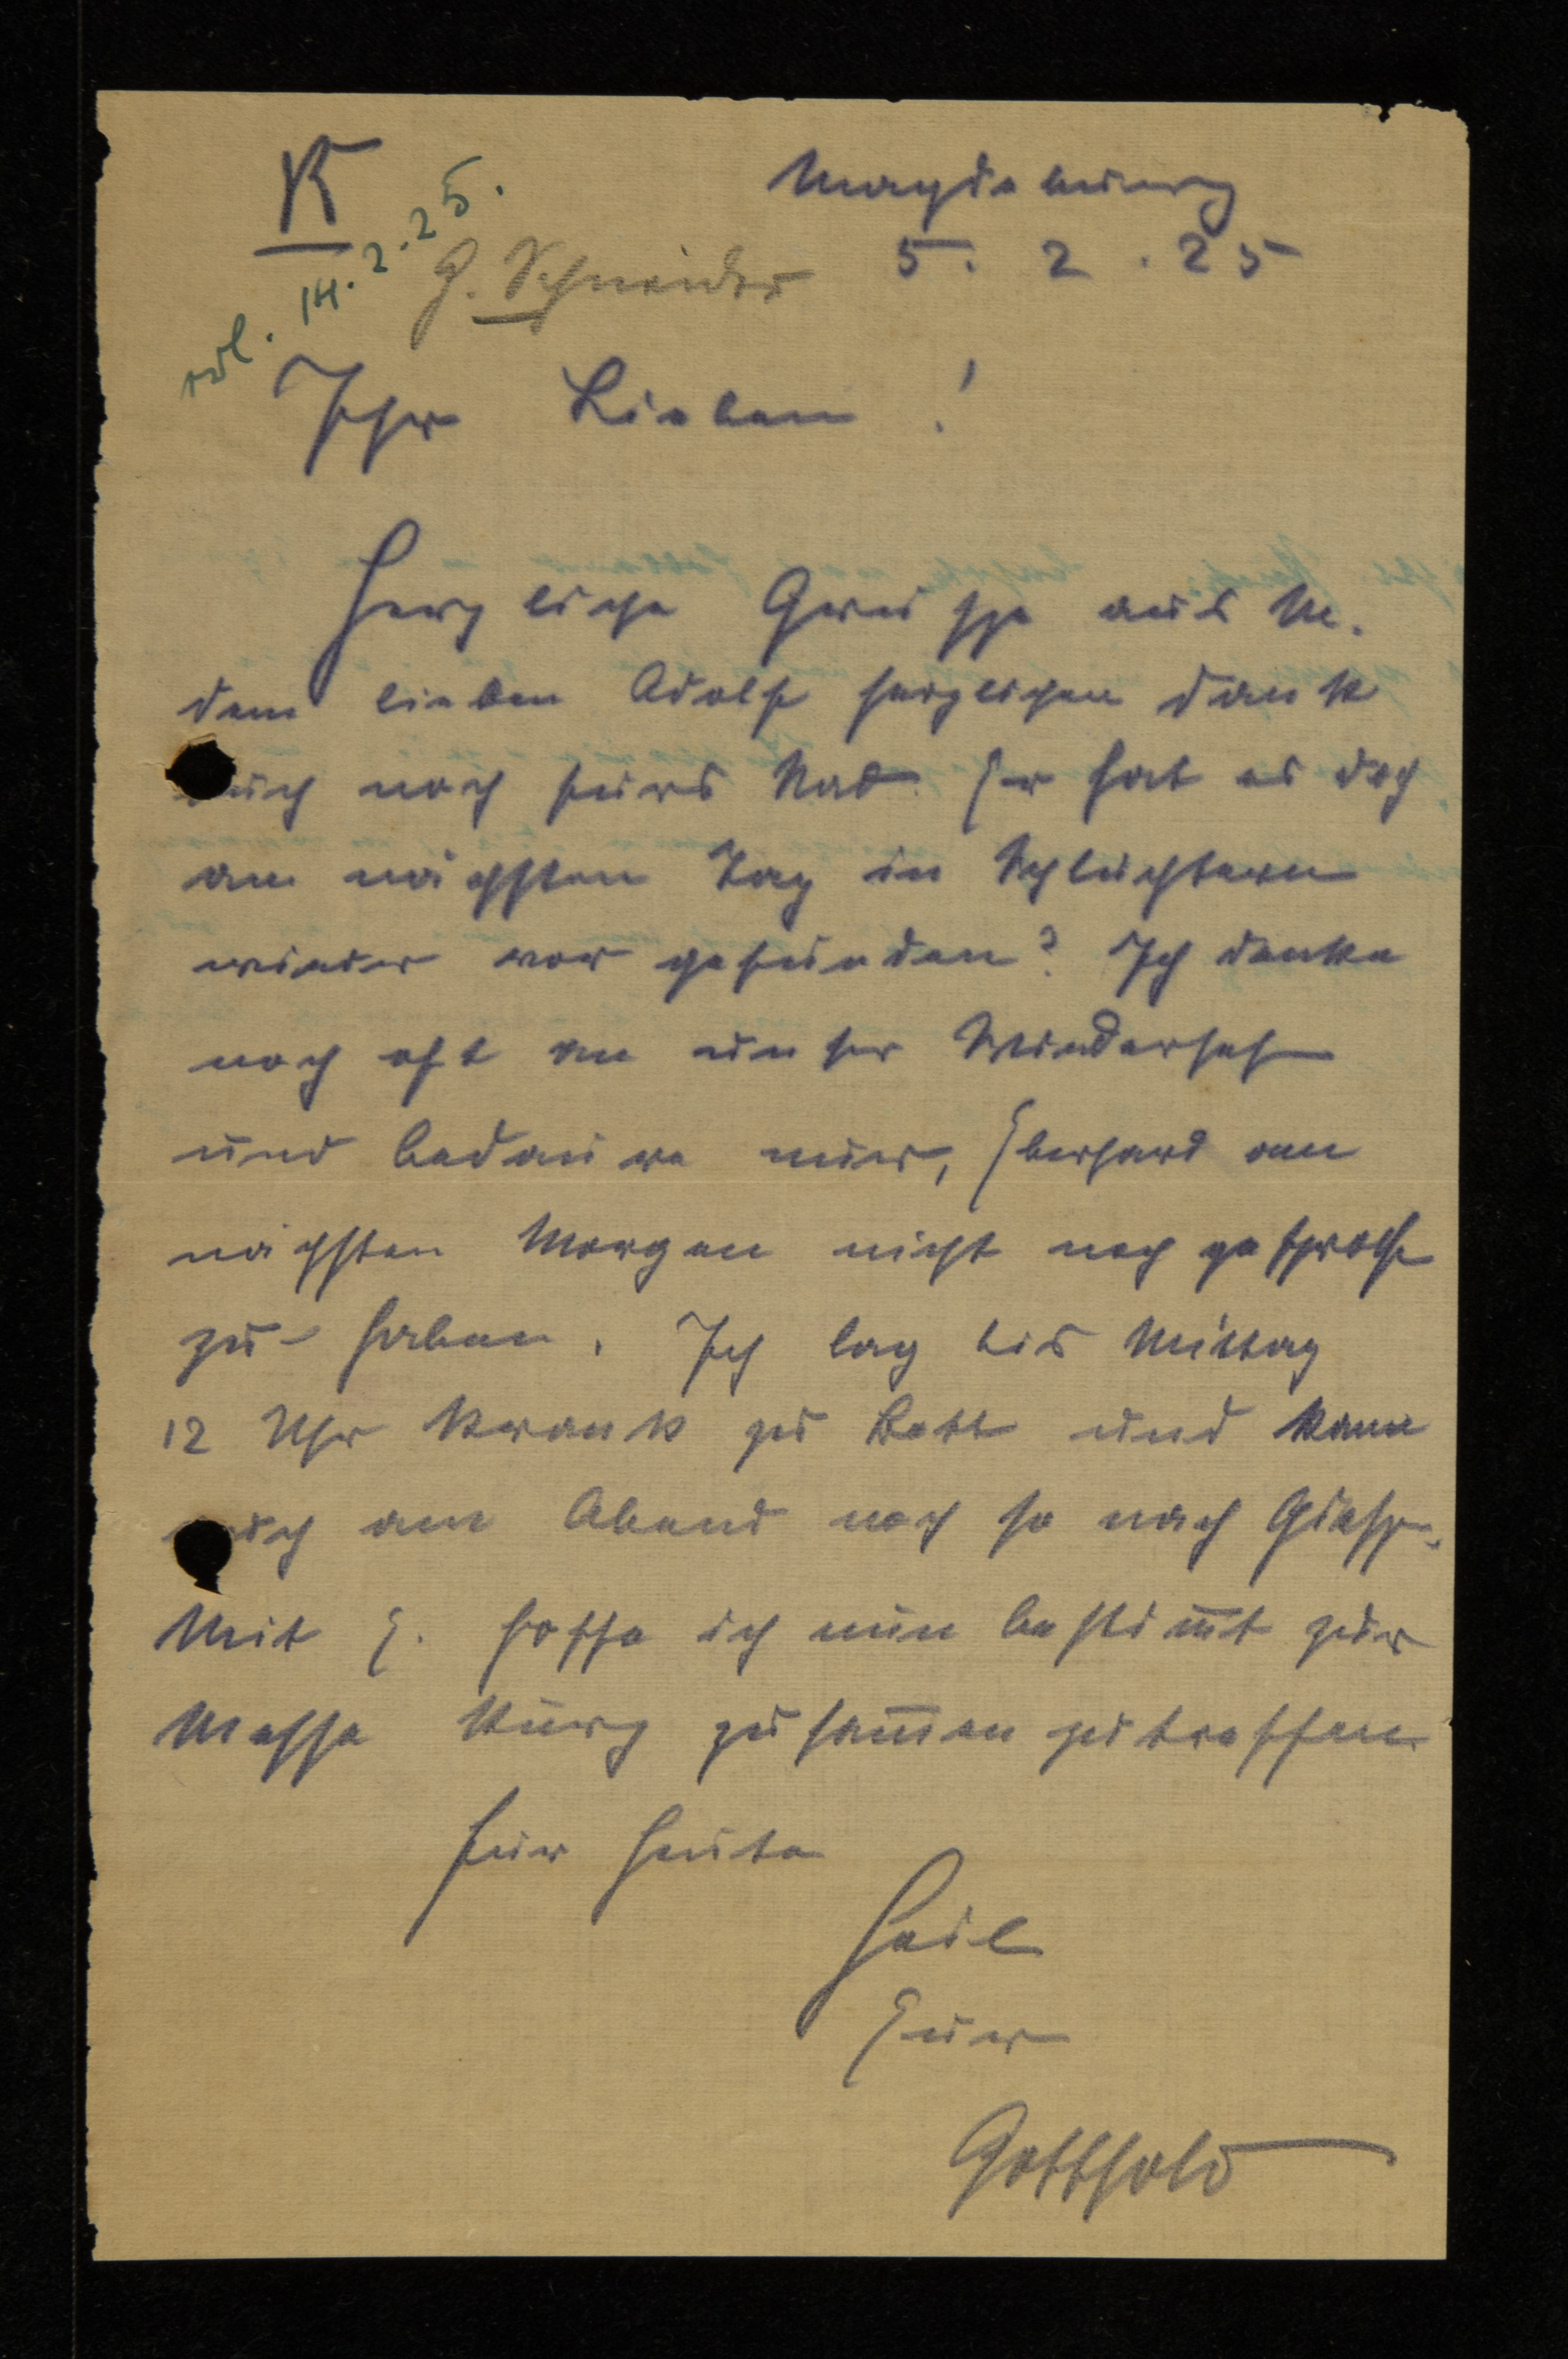 1925 Correspondence, February